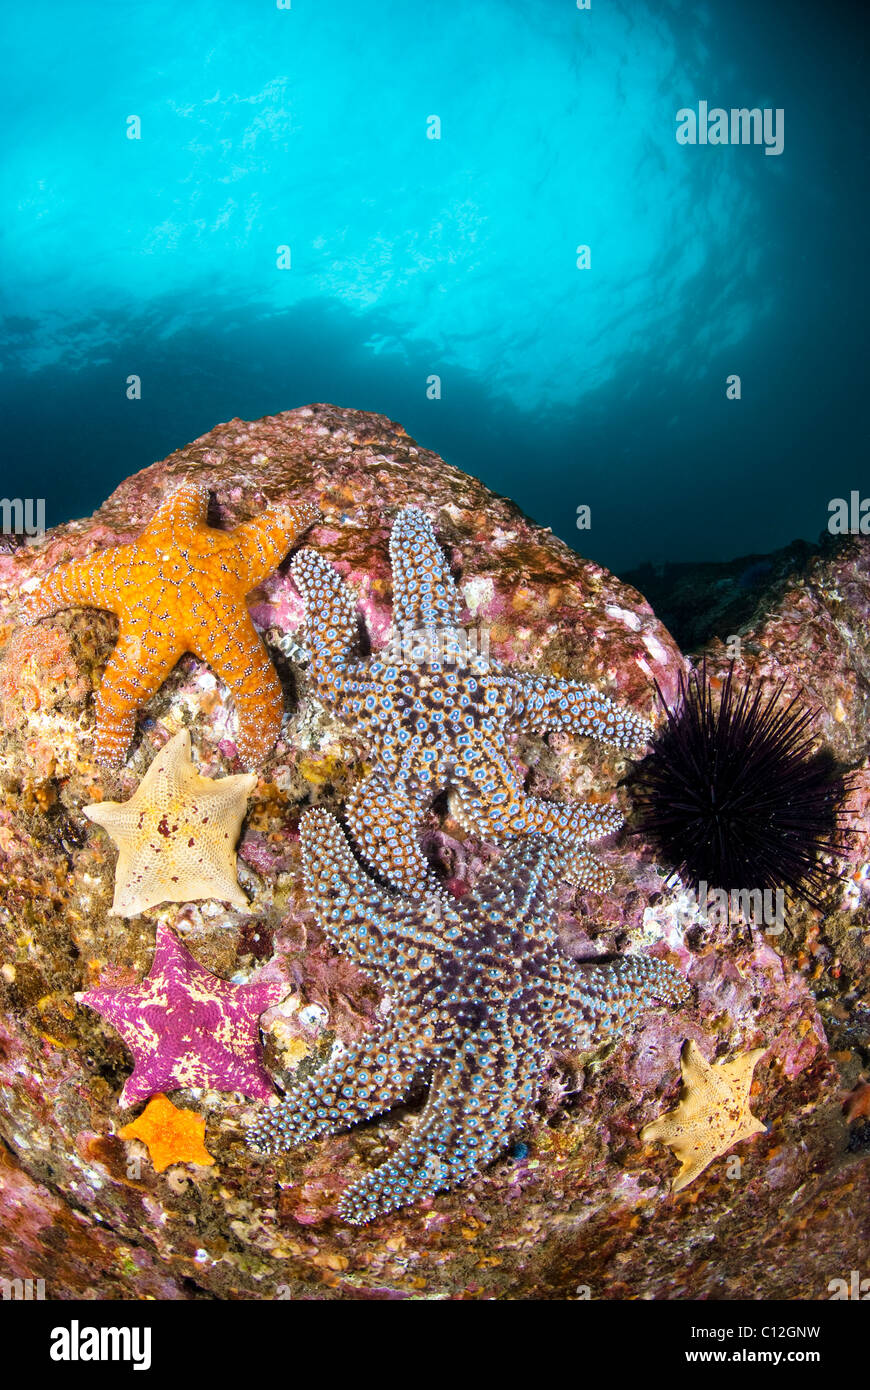 Un gruppo di colorati starfish su una scogliera con le profonde acque blu in background. Foto Stock